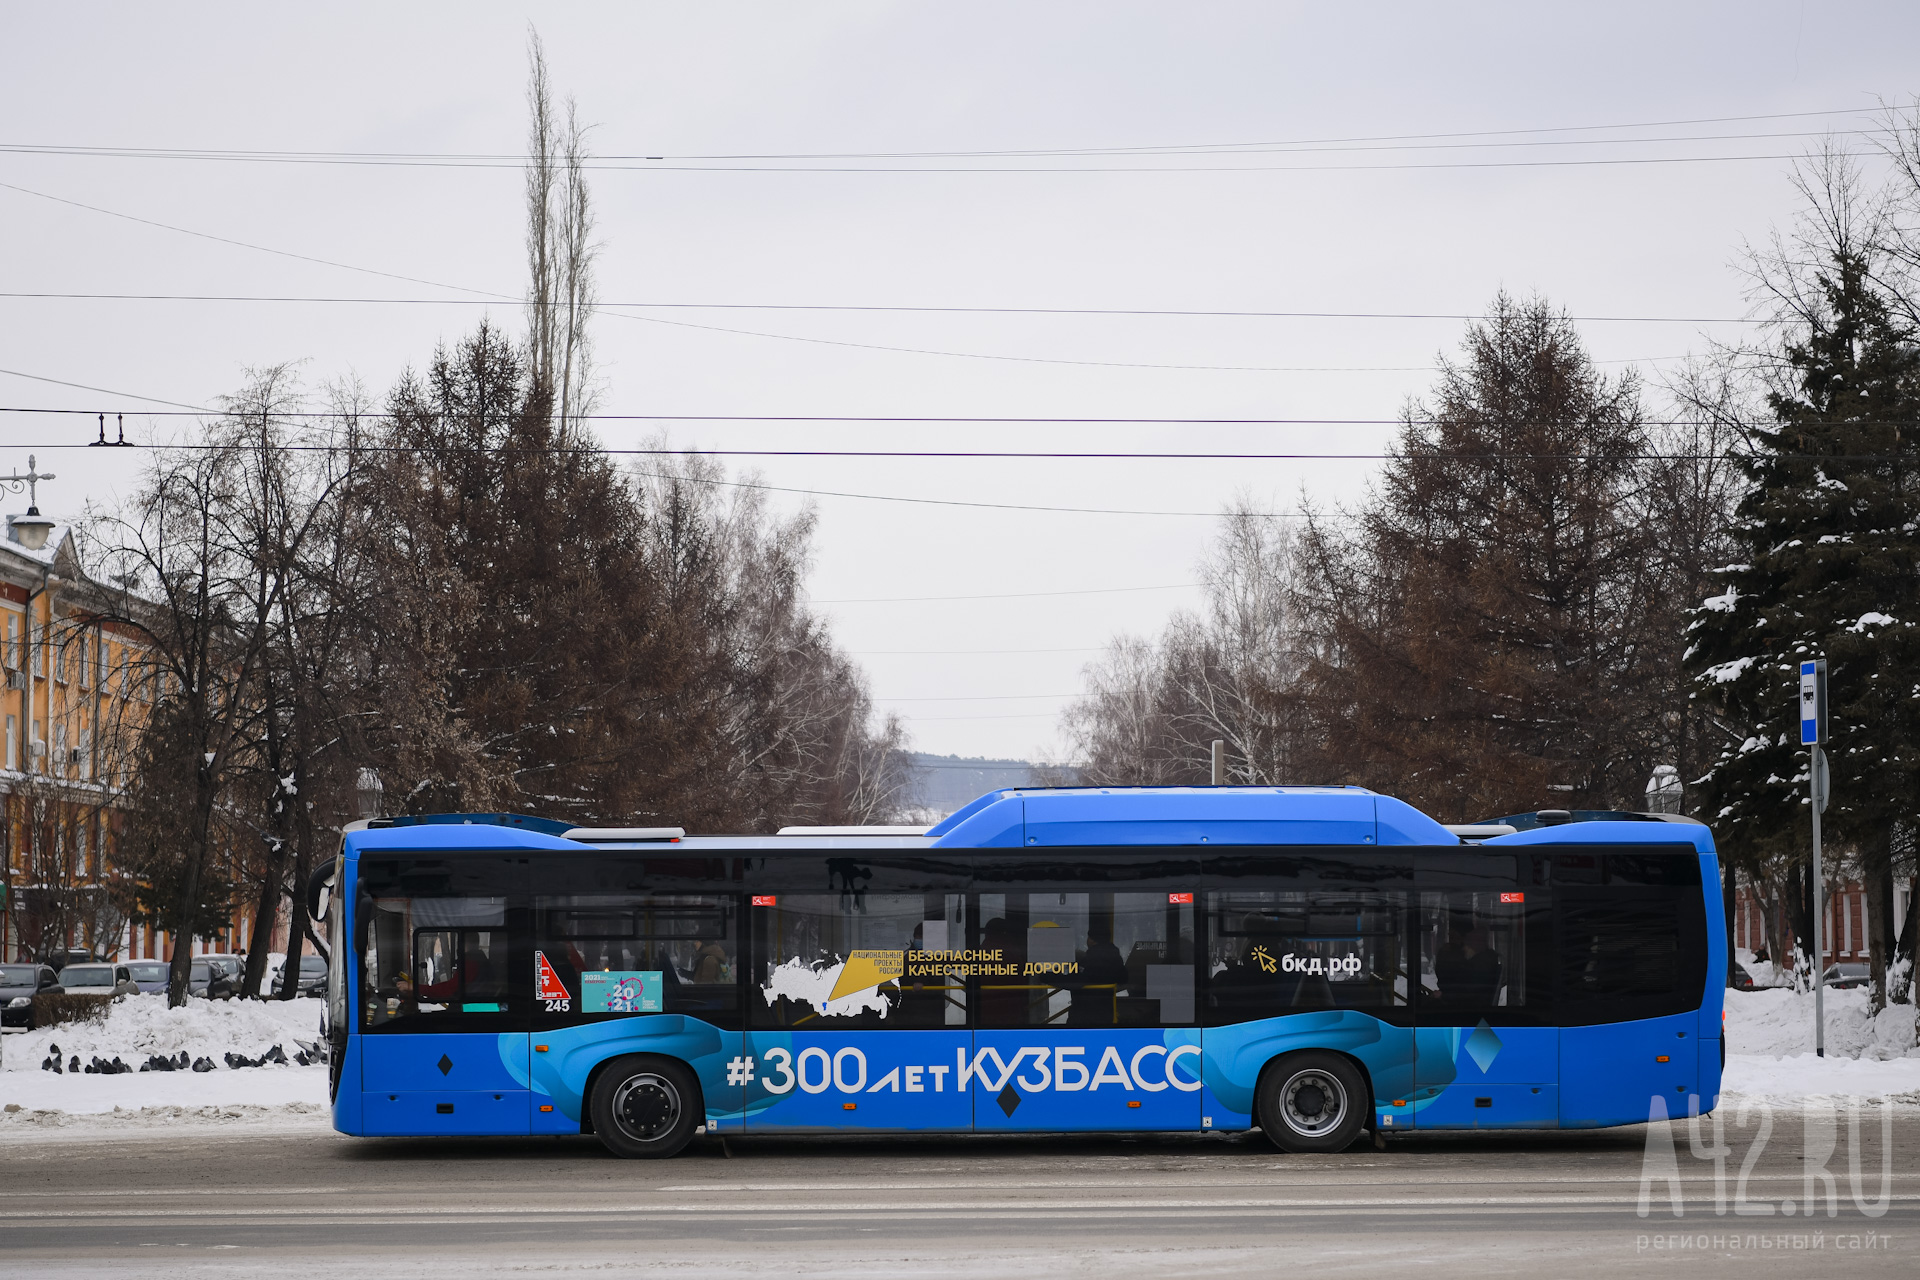 Стало известно, кто испортил сиденья автобуса в Кузбассе